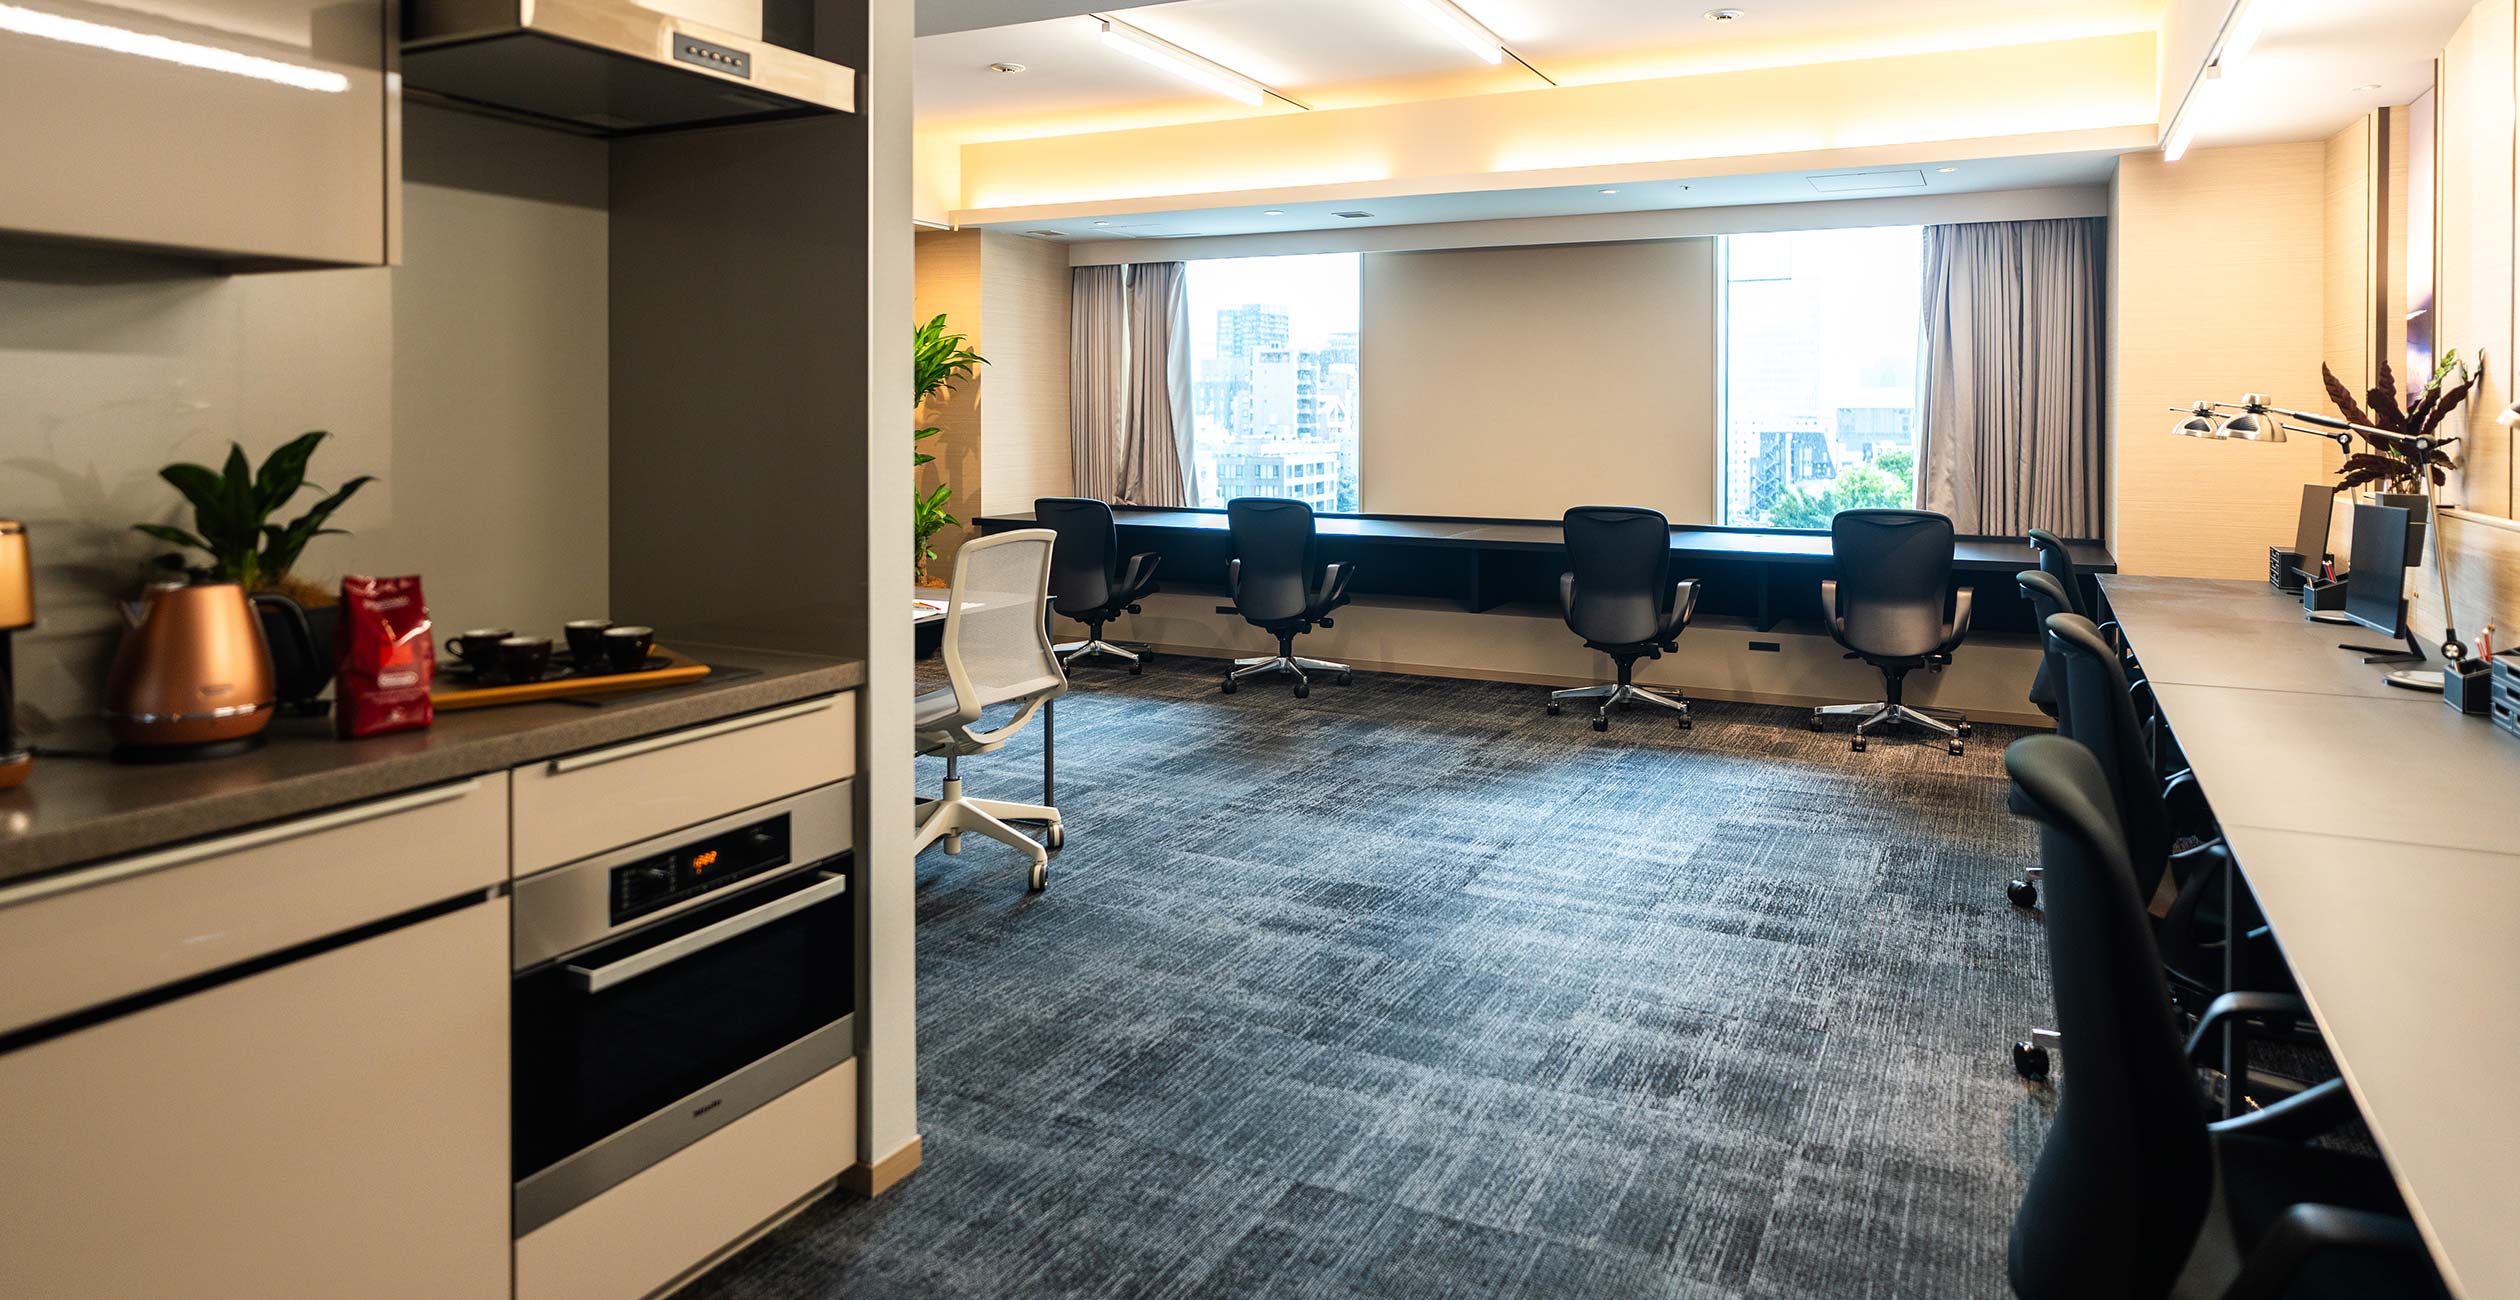 全200室の複合型オフィス 赤坂に誕生。